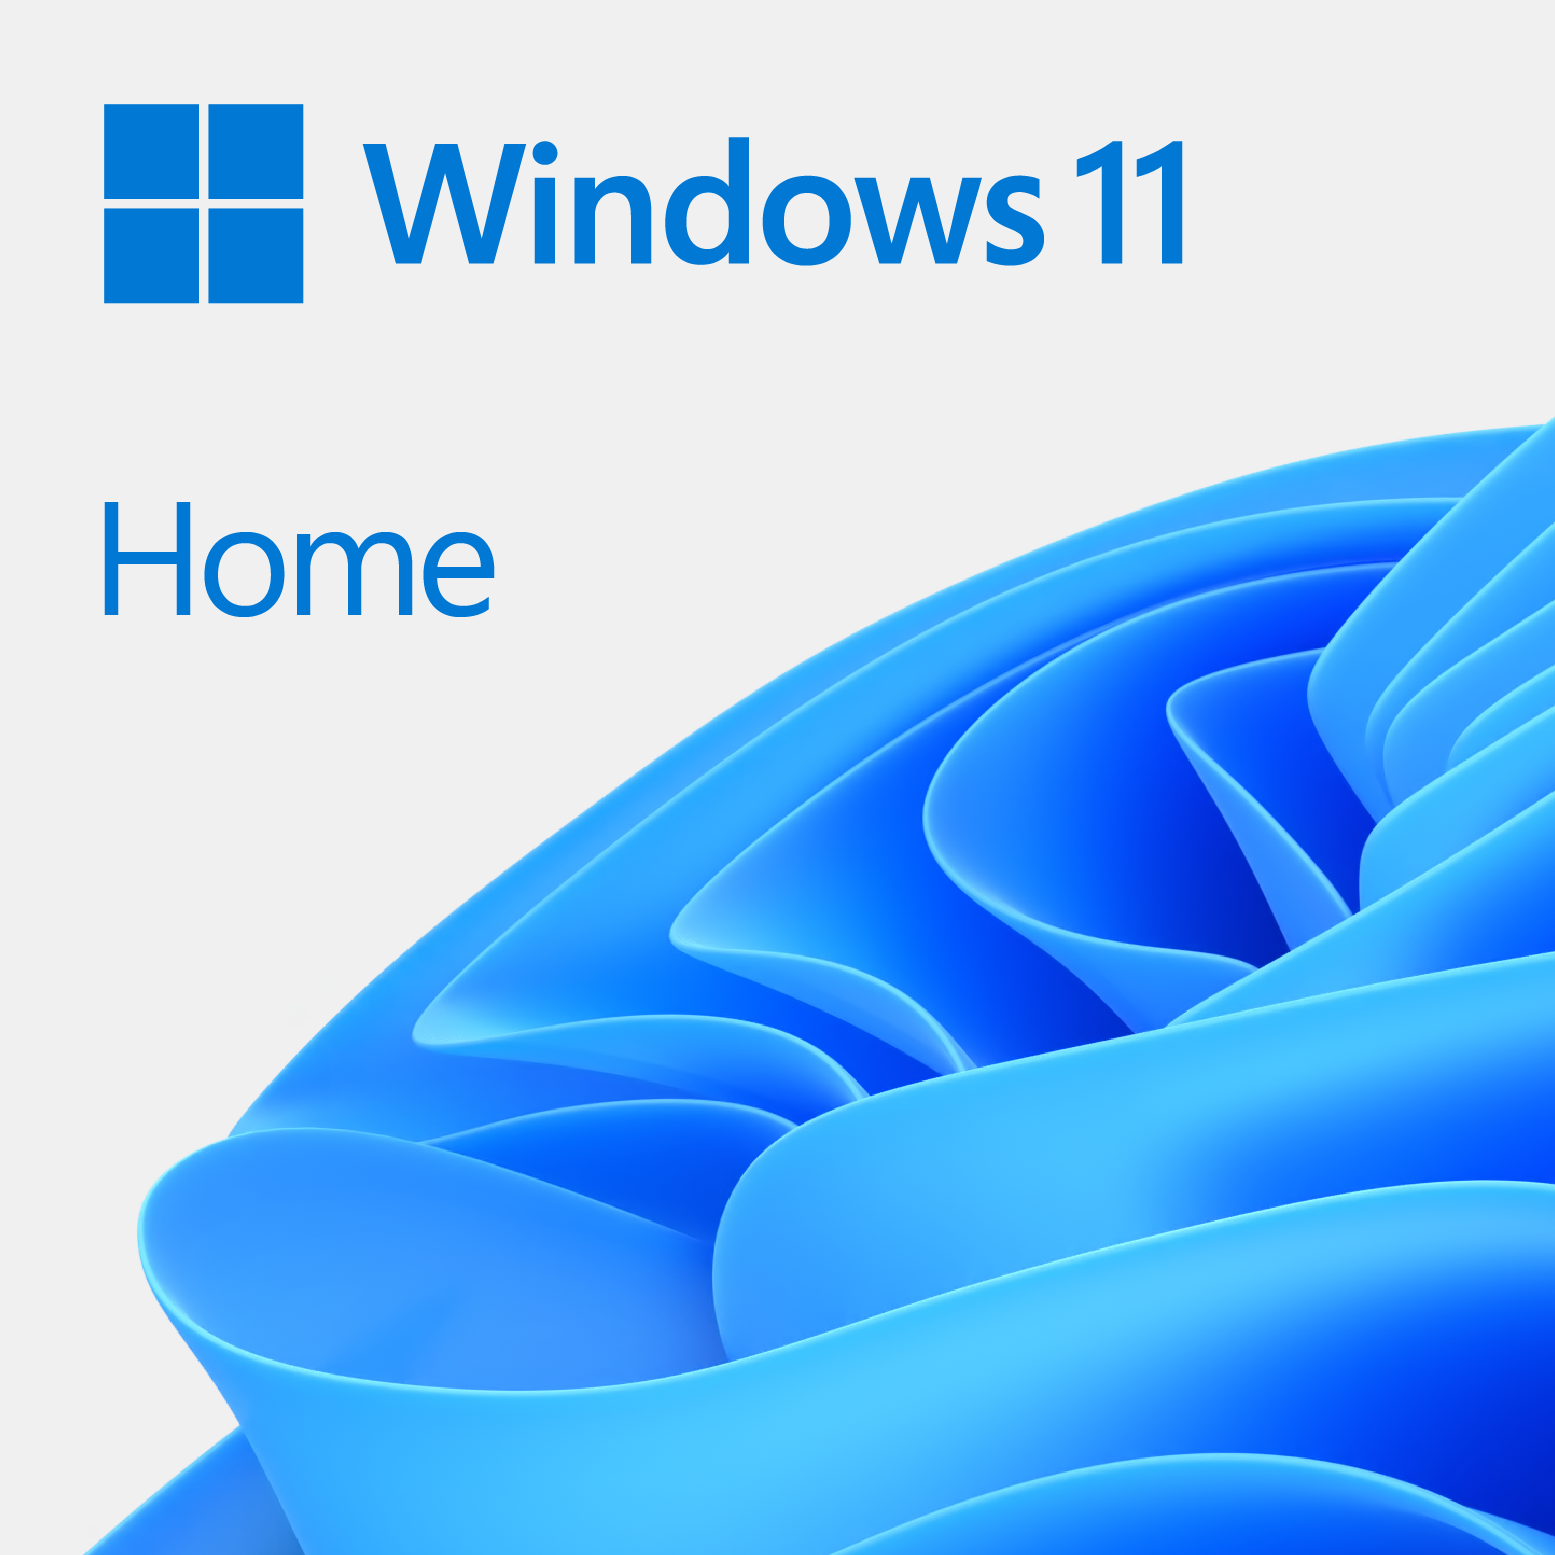 Windows 11 Pro vs Windows 11 Home: similitudes y diferencias entre ambas  versiones